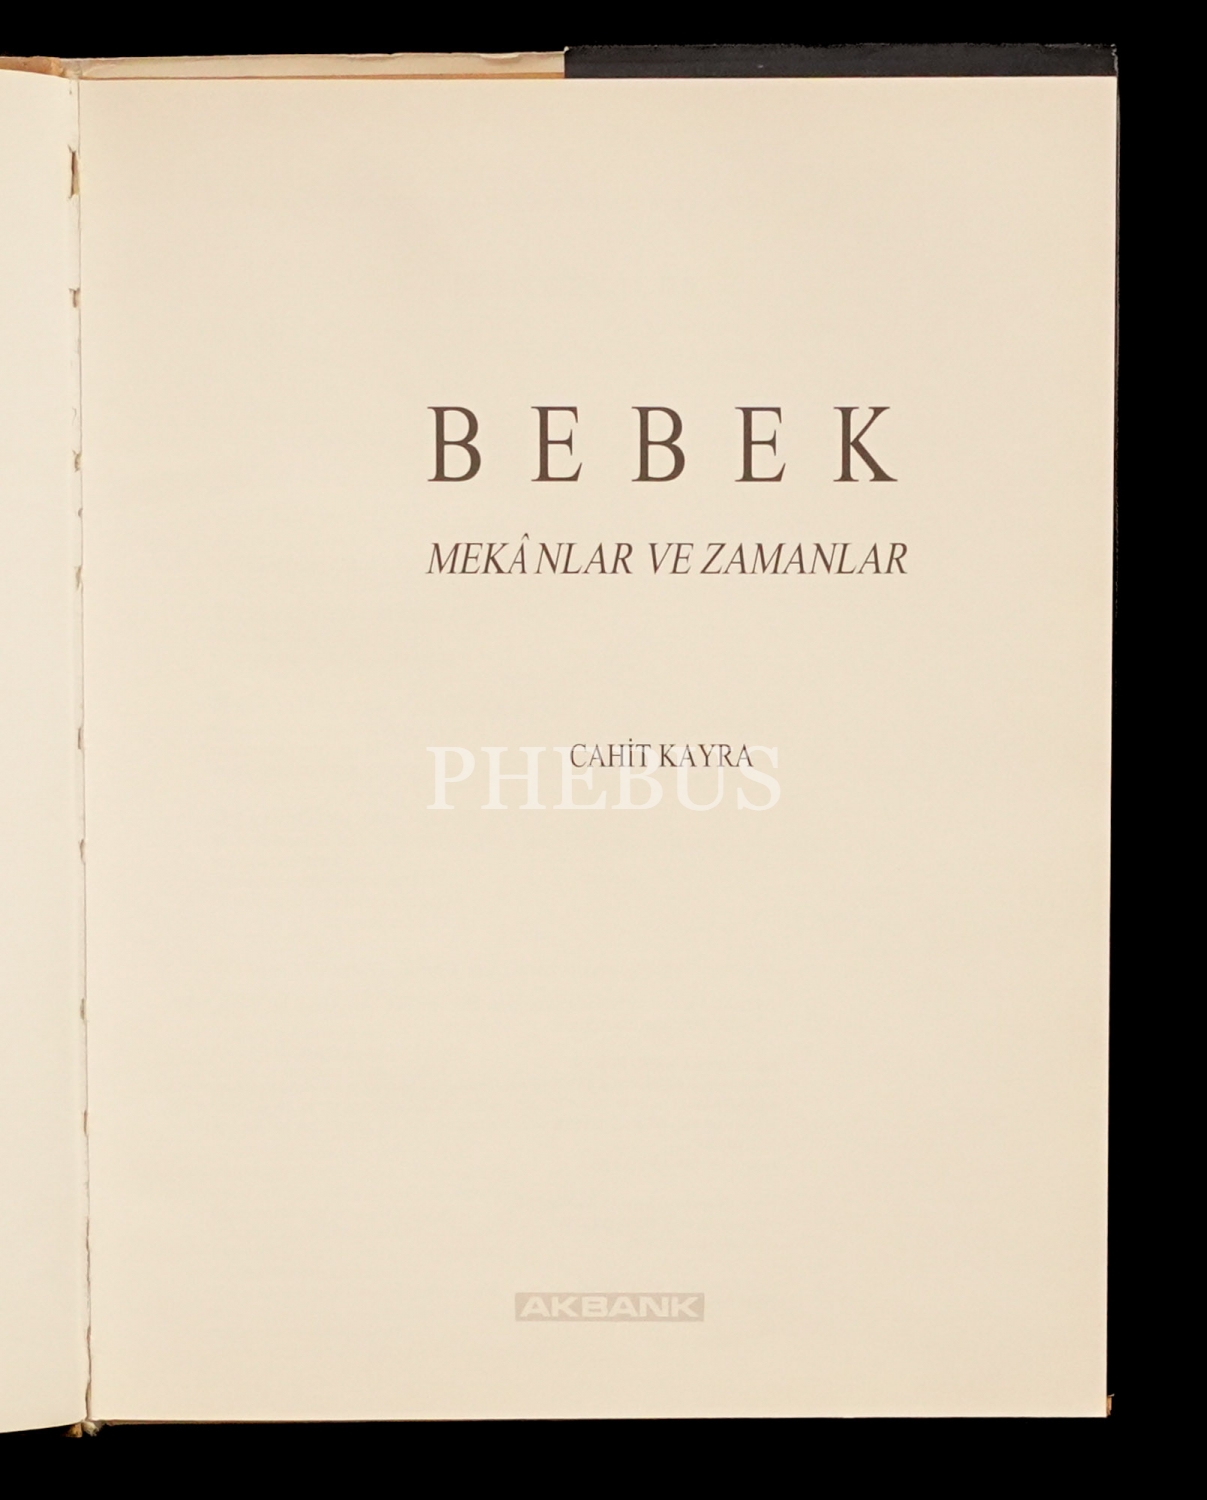 BEBEK (Mekânlar ve Zamanlar), Cahit Kayra, 1993, Akbank Kültür ve Sanat Kitapları, 195 sayfa, 23x29 cm...